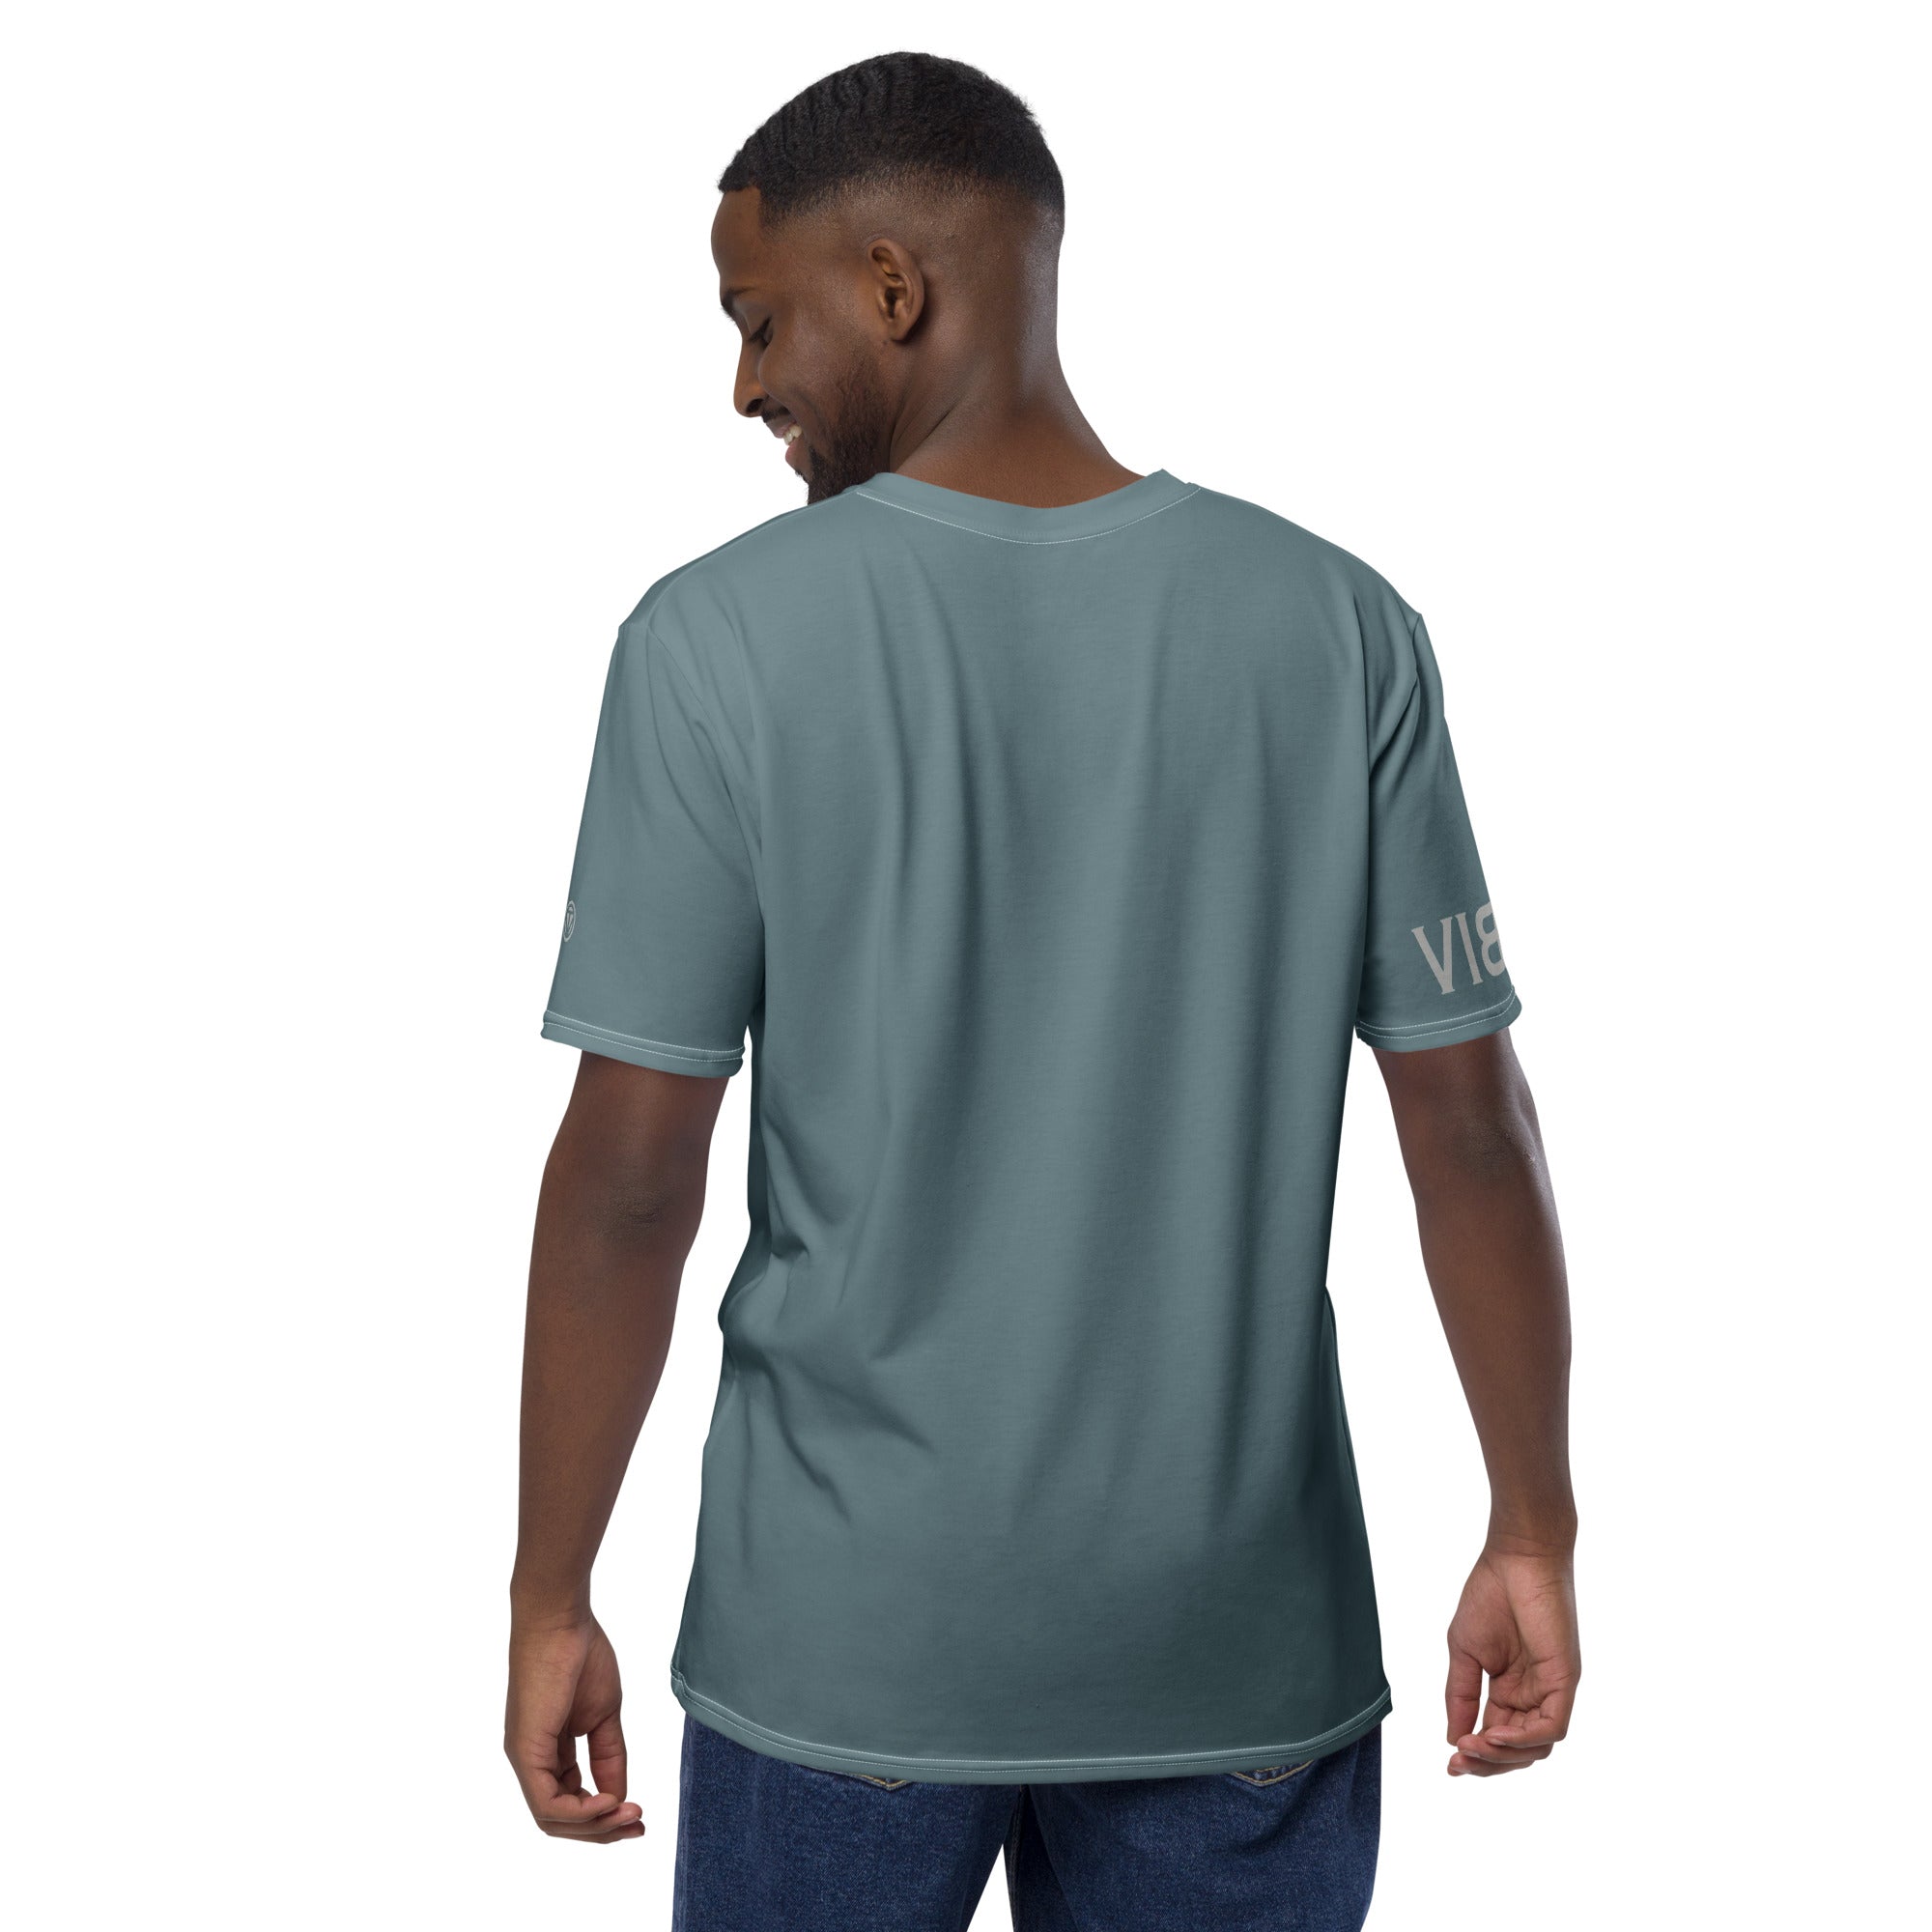 &lt;tc&gt;T-shirt Premium Homme VIBESONE (Gris-bleu)&lt;/tc&gt;